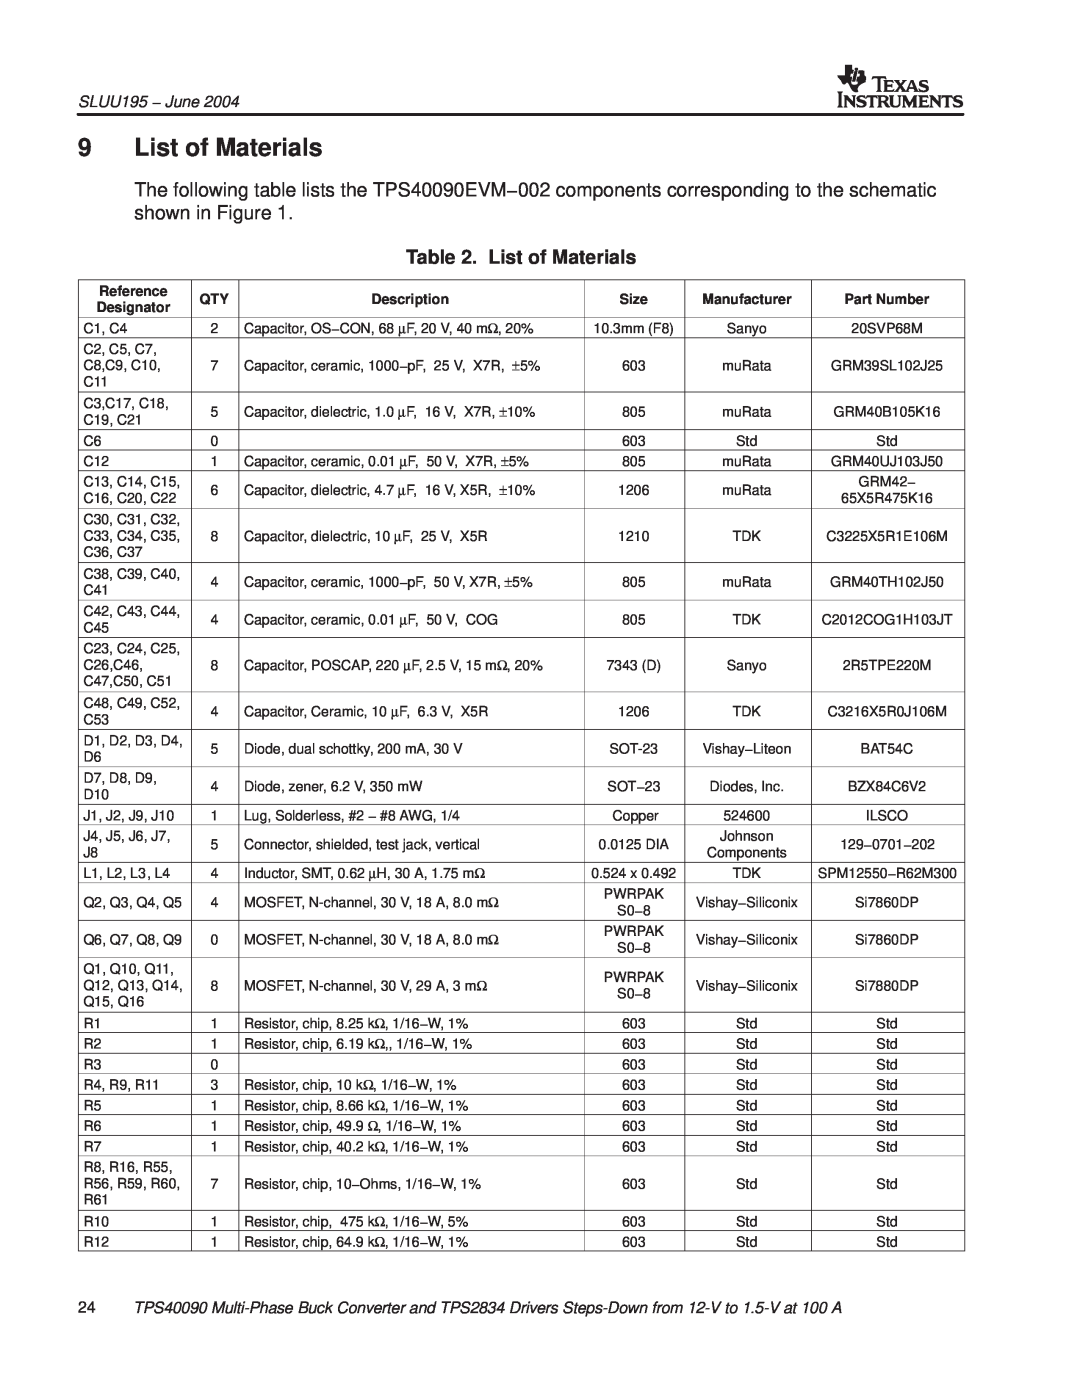 Texas Instruments TPS40090EVM-002 manual List of Materials, SLUU195 − June 